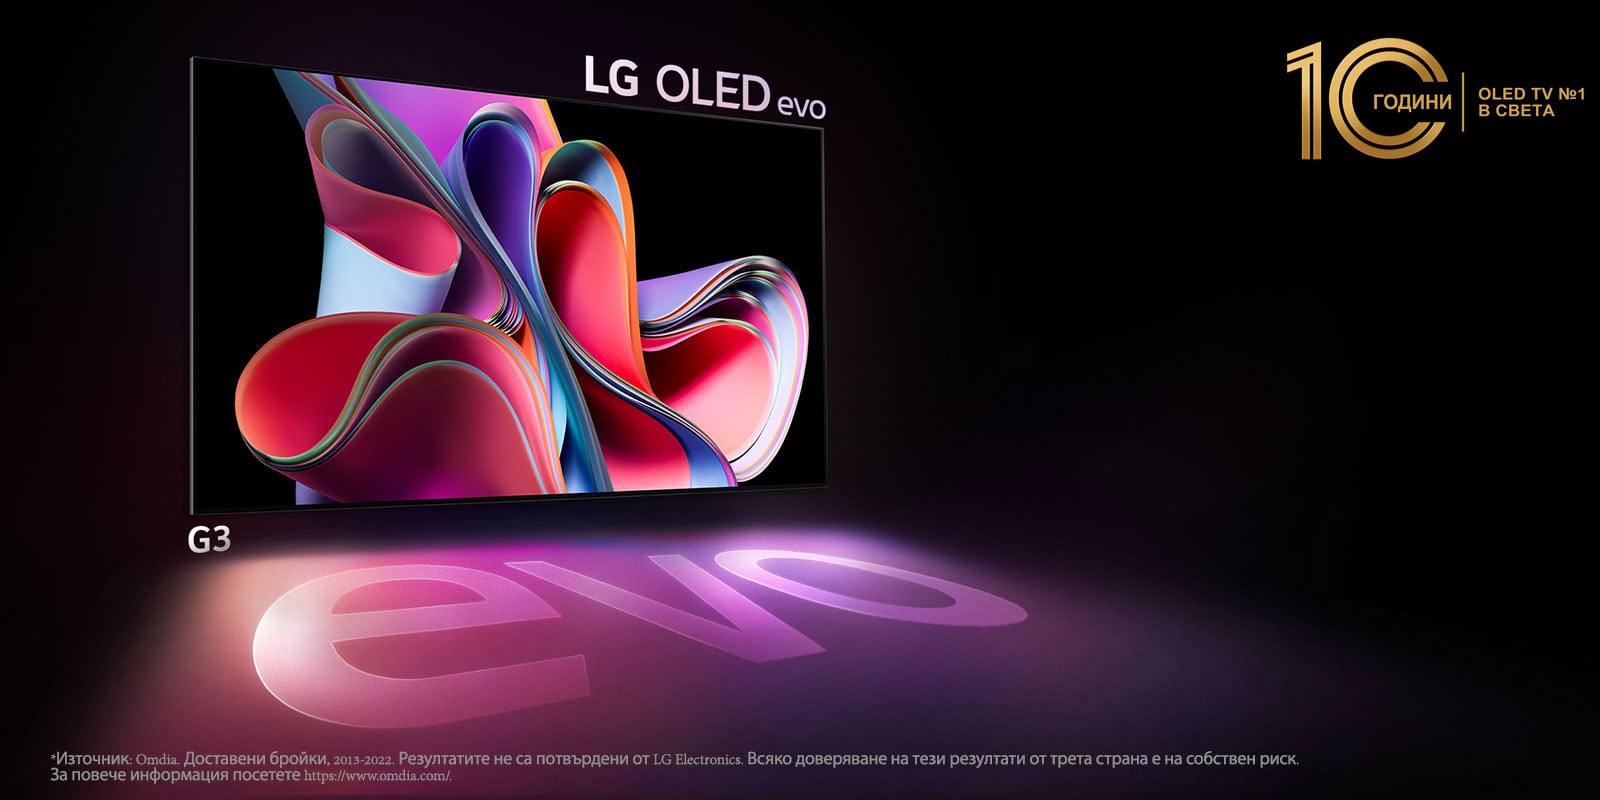 Изображение на LG OLED G3 на черен фон, показващо абстрактна картина в ярко розово и виолетово. Дисплеят хвърля цветна сянка, която съдържа думата "evo." Емблемата „10 години OLED телевизор №1 в света“ в горния ляв ъгъл на изображението. 